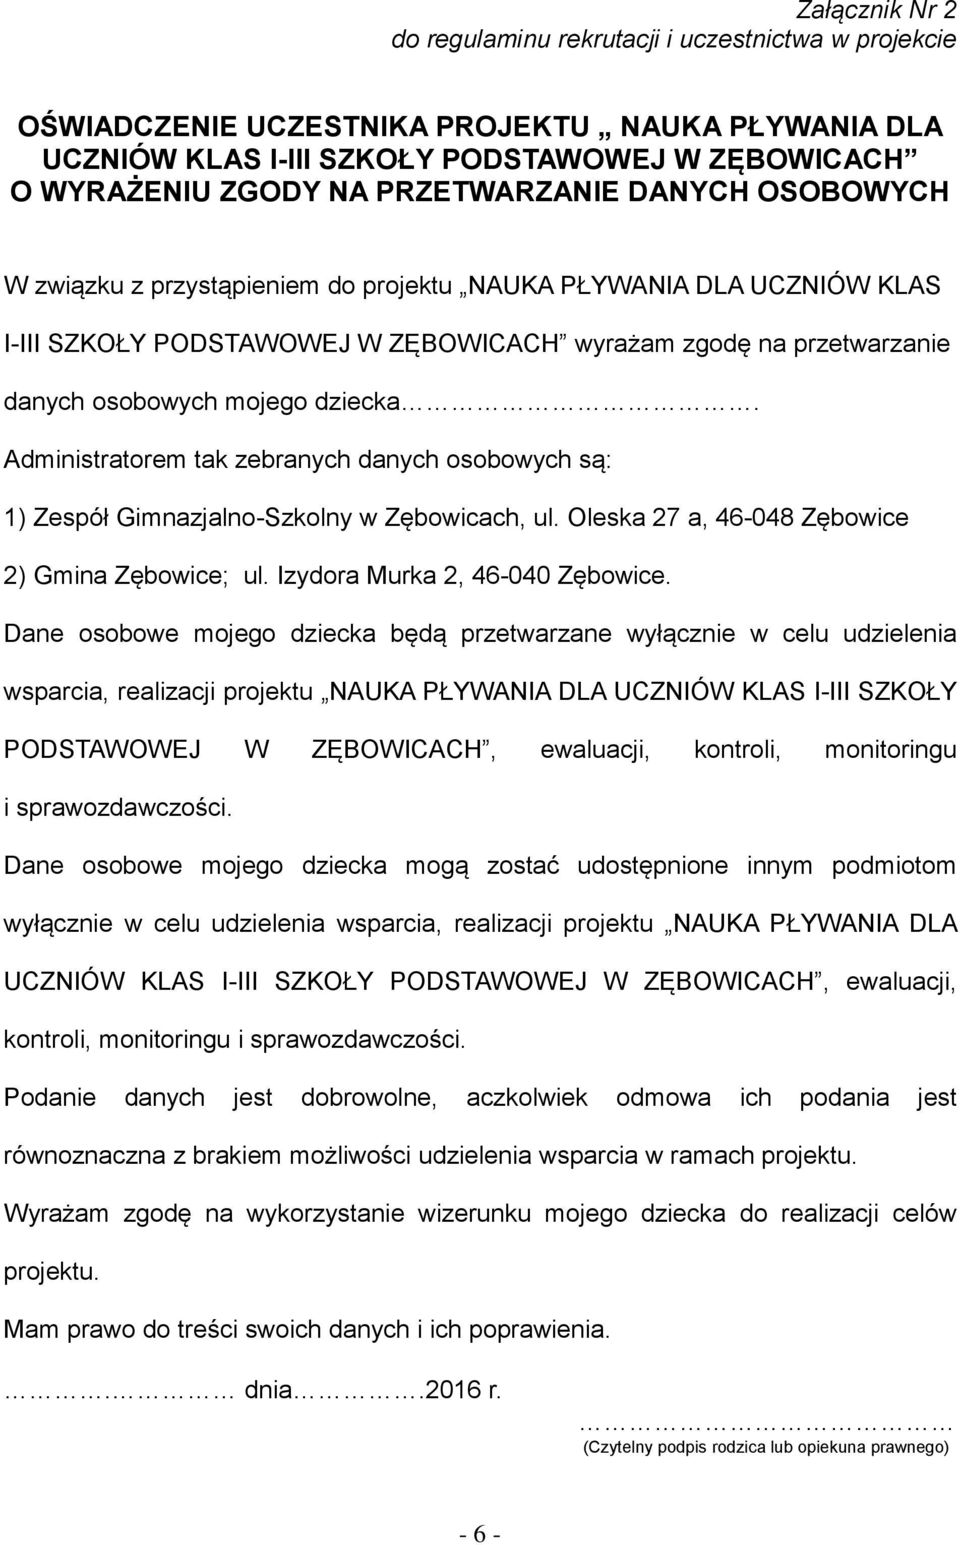 Administratorem tak zebranych danych osobowych są: 1) Zespół Gimnazjalno-Szkolny w Zębowicach, ul. Oleska 27 a, 46-048 Zębowice 2) Gmina Zębowice; ul. Izydora Murka 2, 46-040 Zębowice.